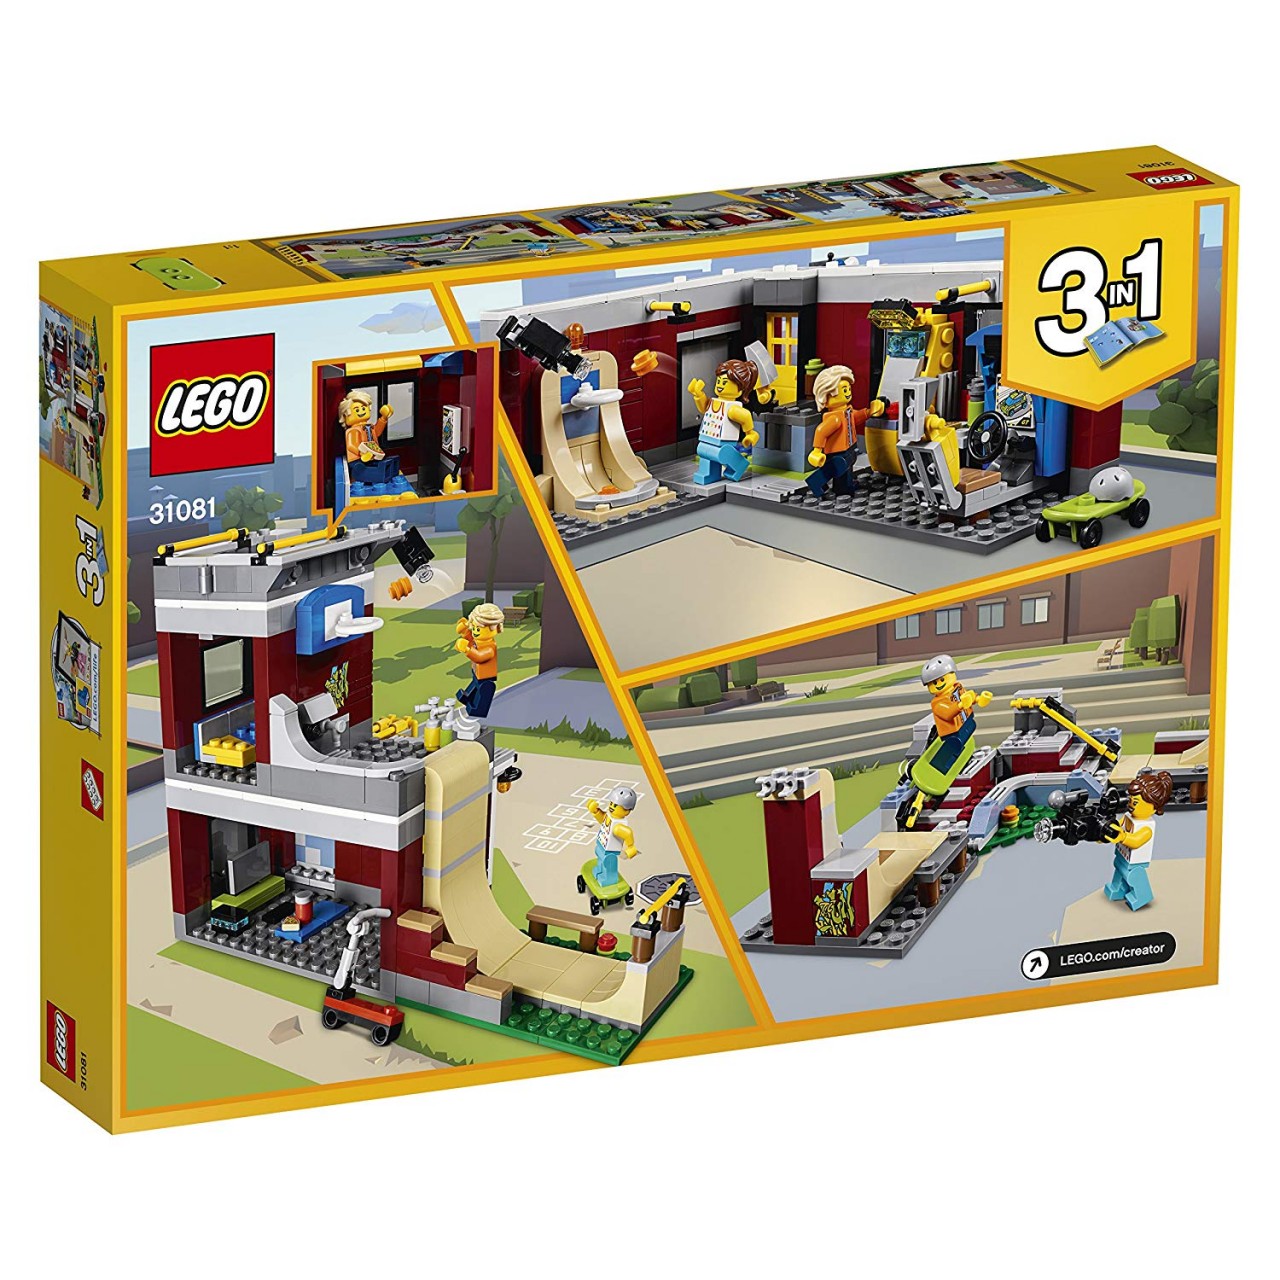 LEGO CREATOR 31081 Modulares Freizeitzentrum